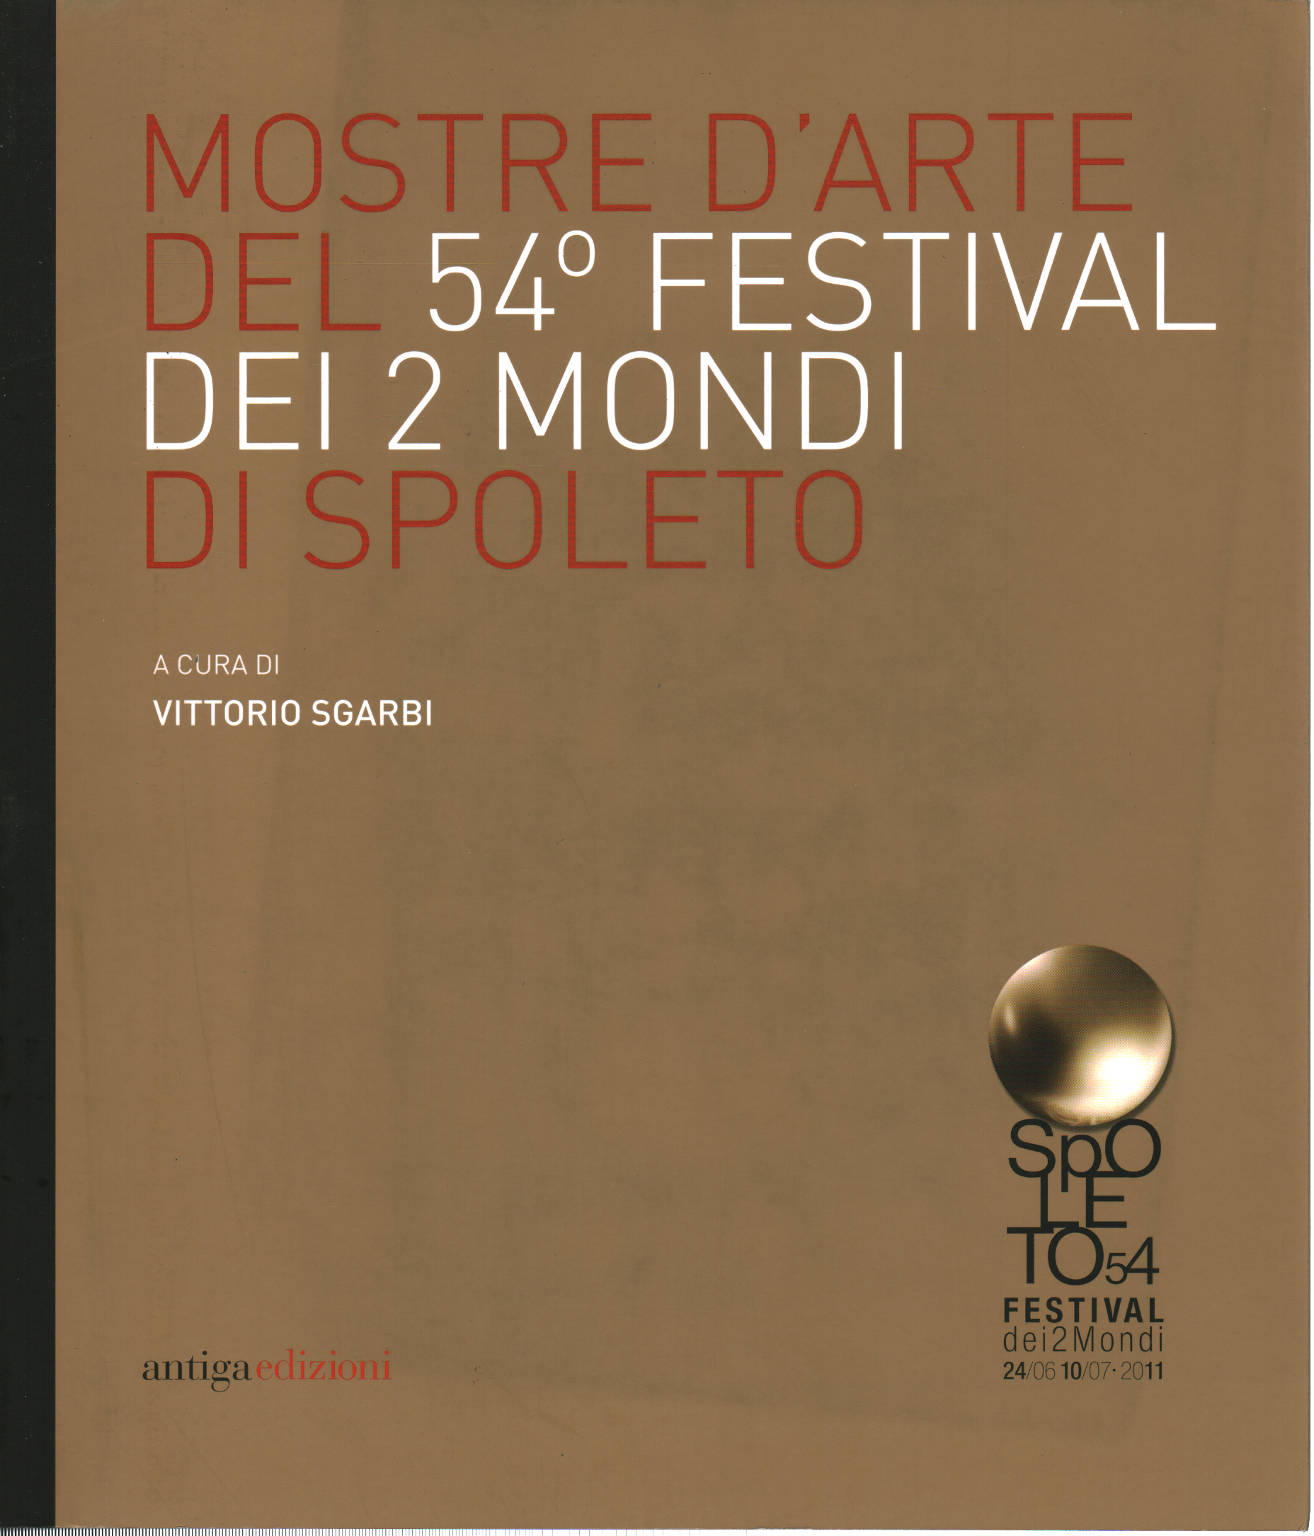 Art exhibitions of the 54th Festival dei 2 mondi di Spo, Vittorio Sgarbi